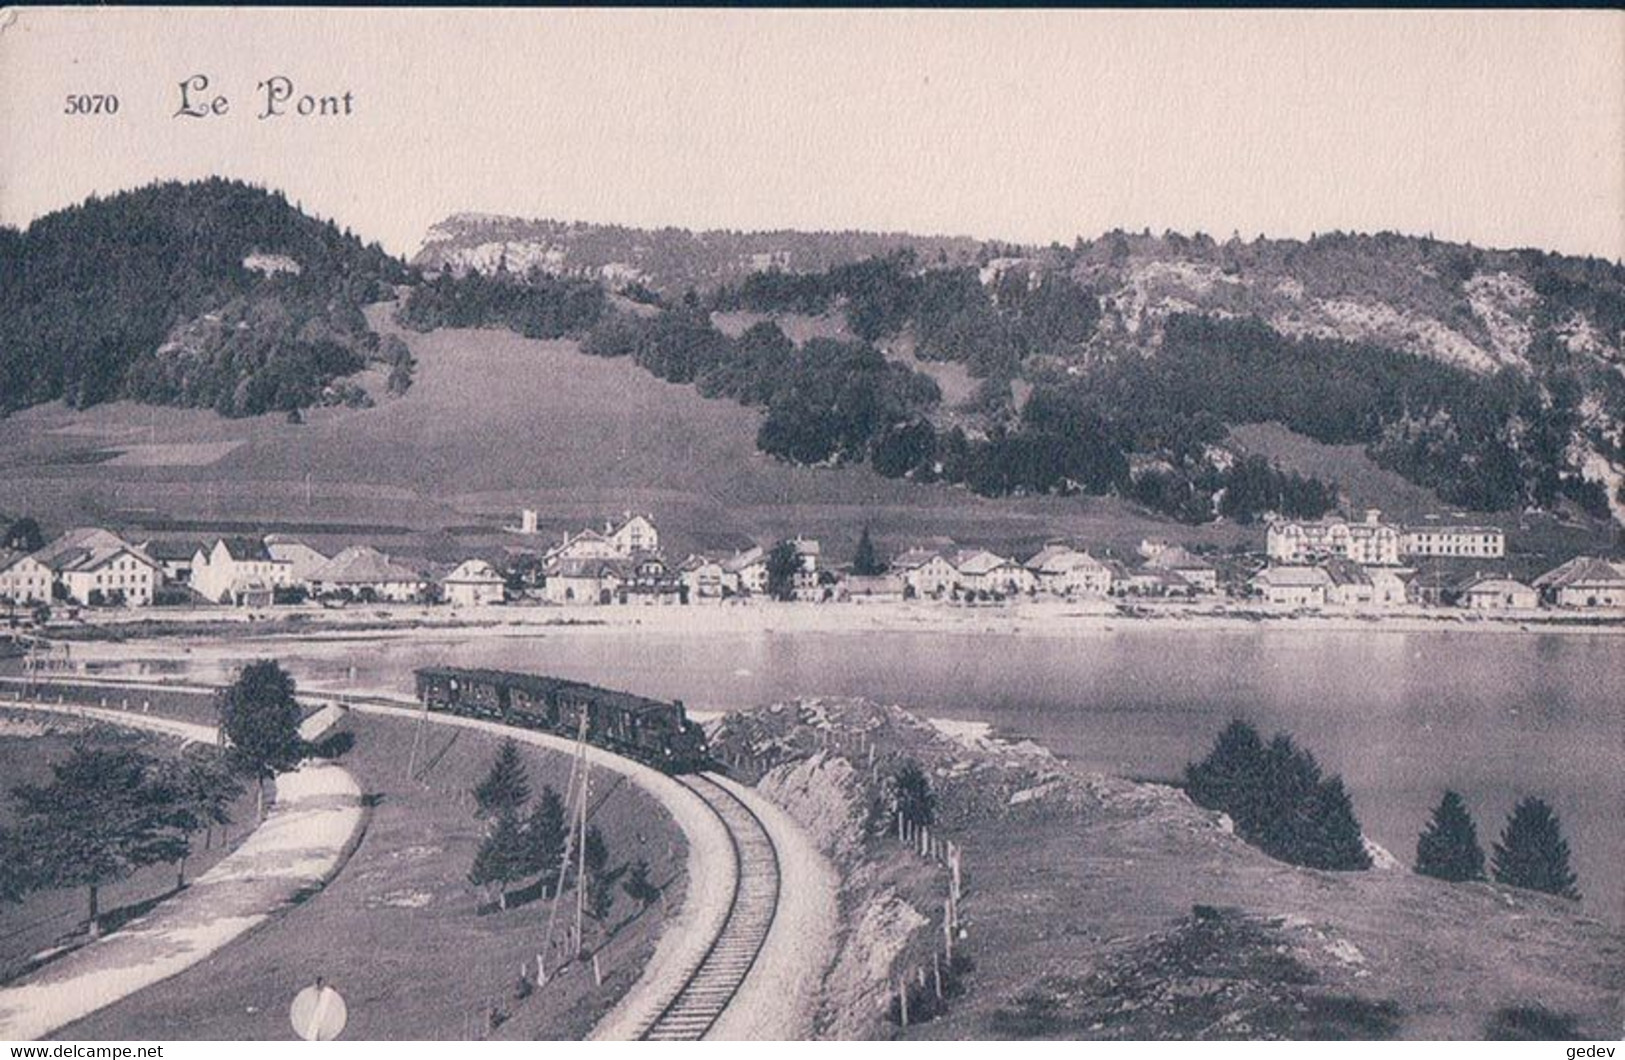 Vallée De Joux VD, Chemin De Fer Suisse, Train à Vapeur Entre Le Pont Et Les Charbonnières (5070) - Eisenbahnen